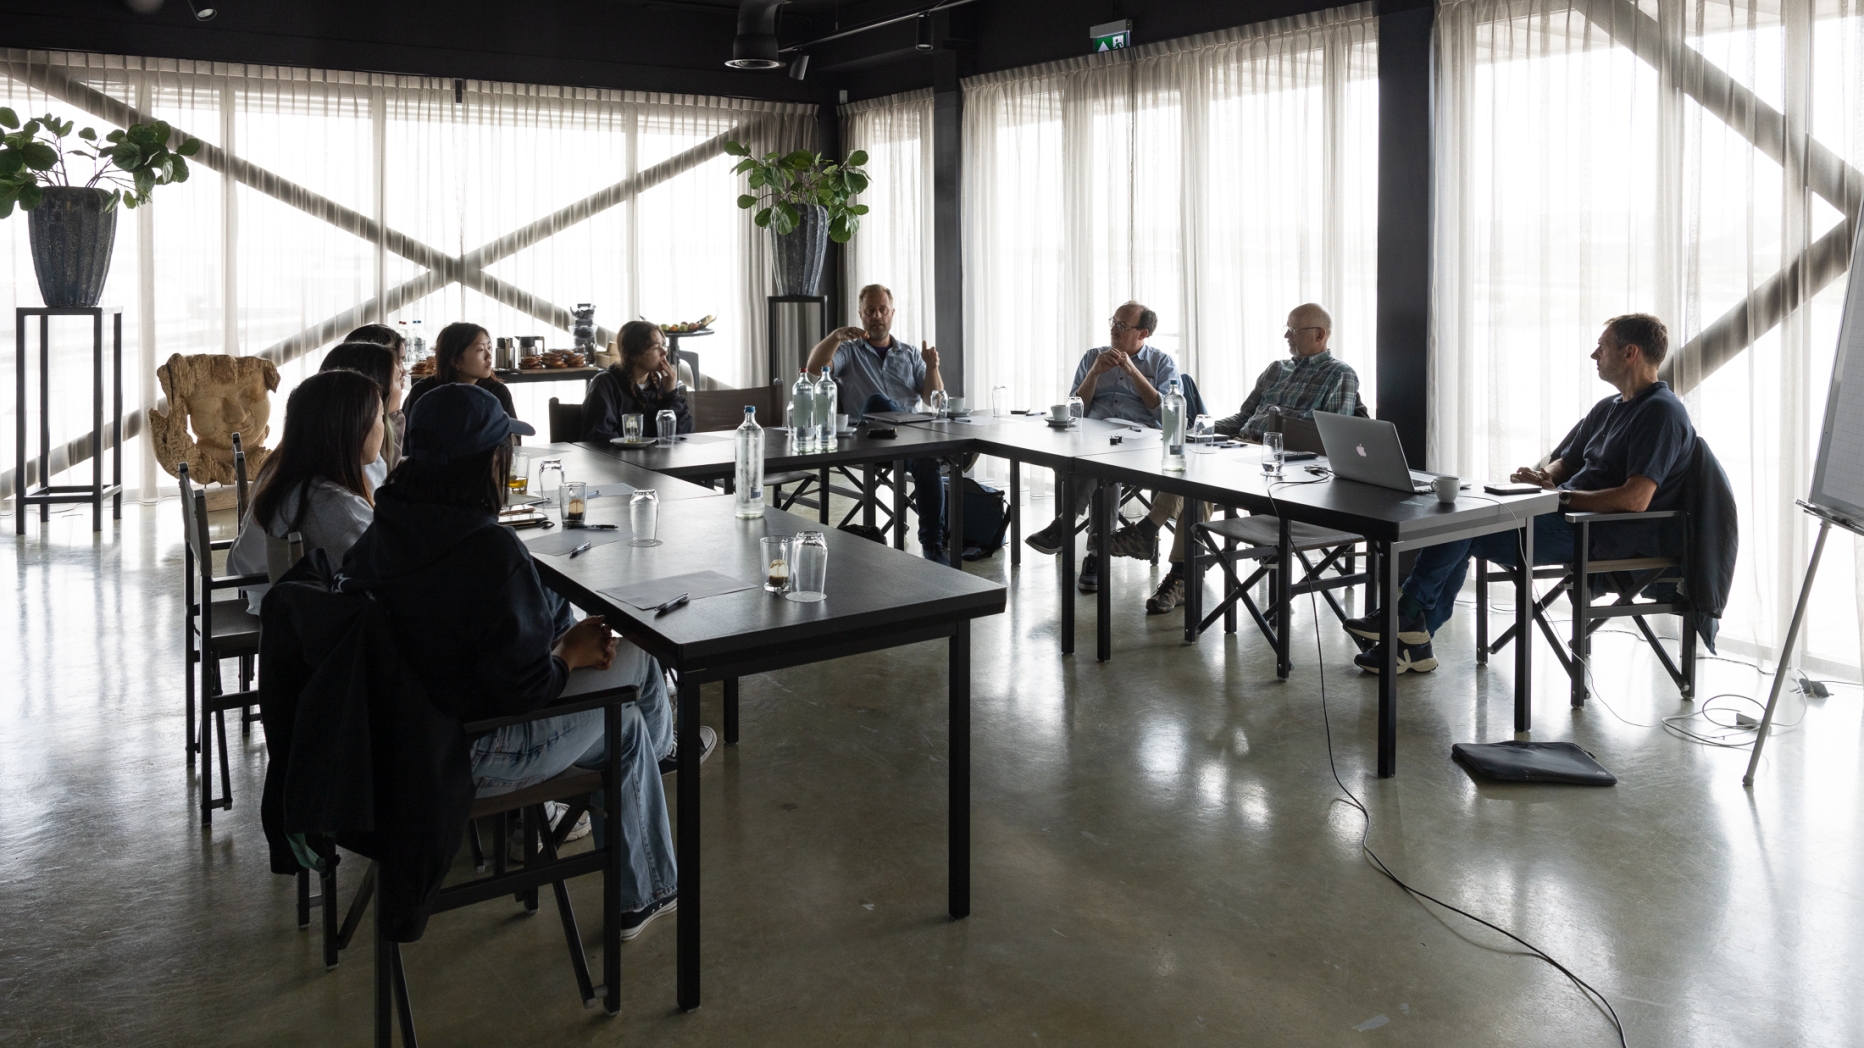 Meeting with Ad Kil, Walter Jonker, and Jim van Belzen in Zeeland